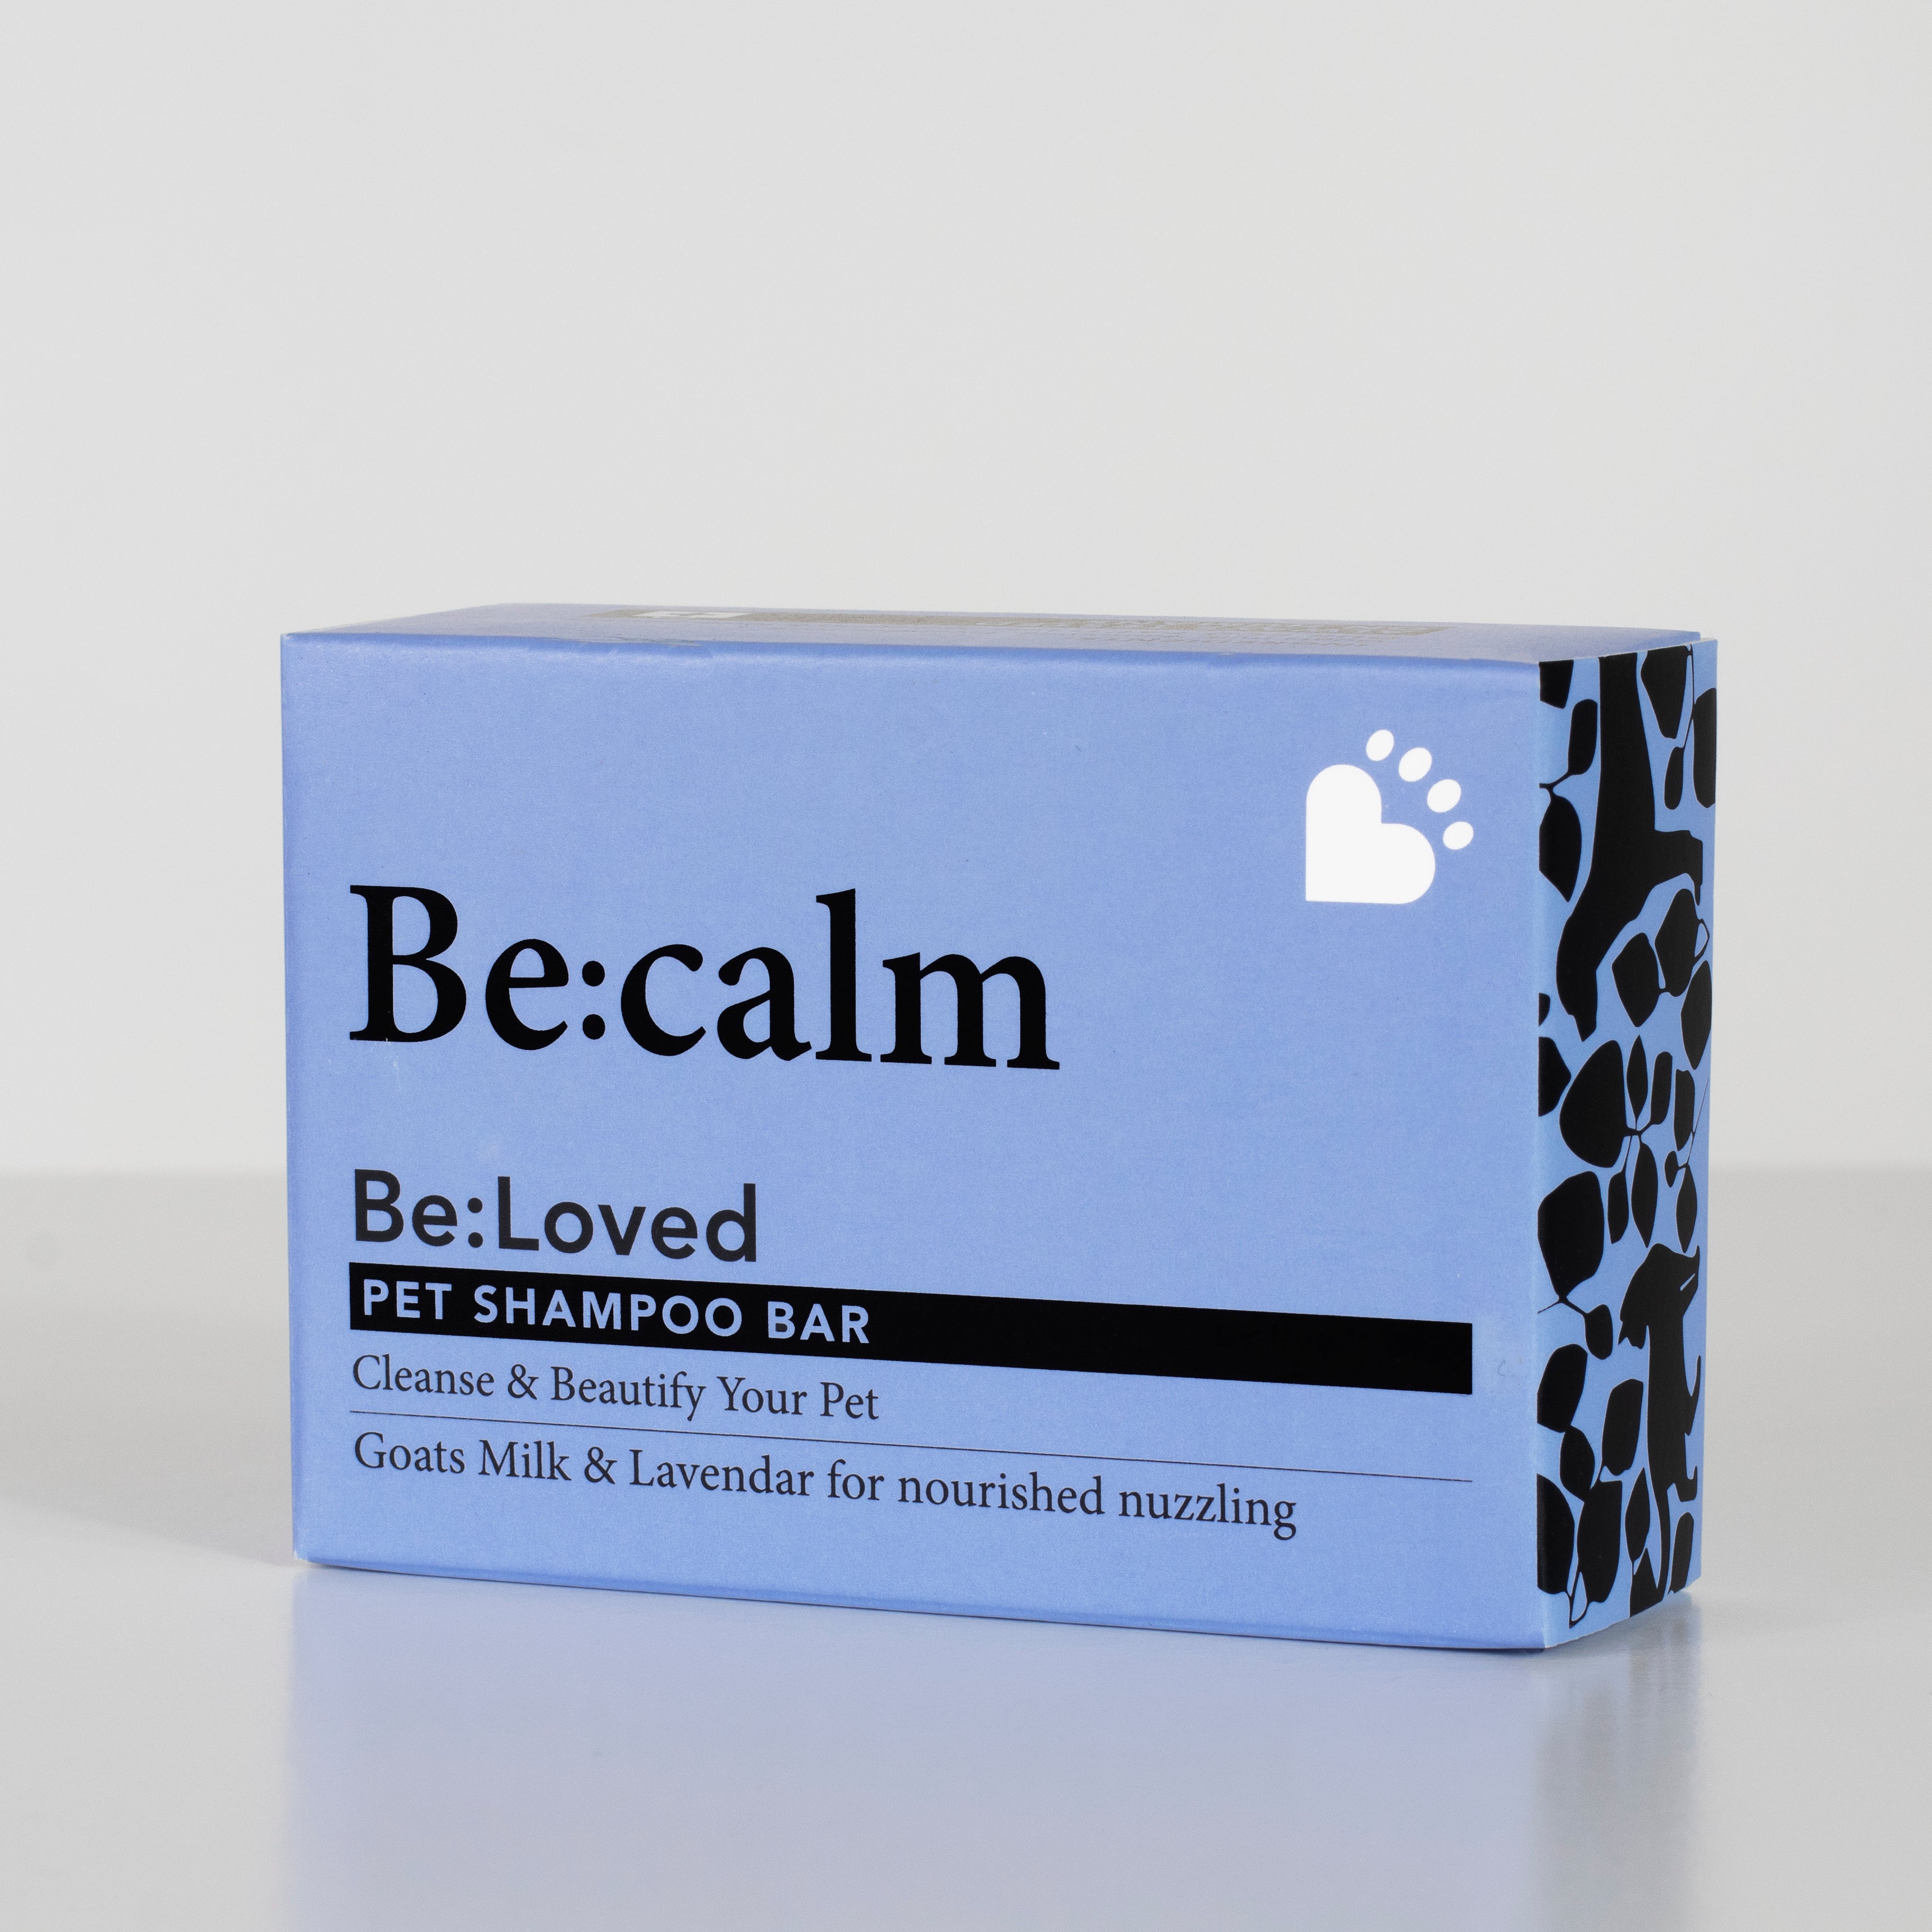 Be:Calm – Calm & Condition Pet Shampoo Bar